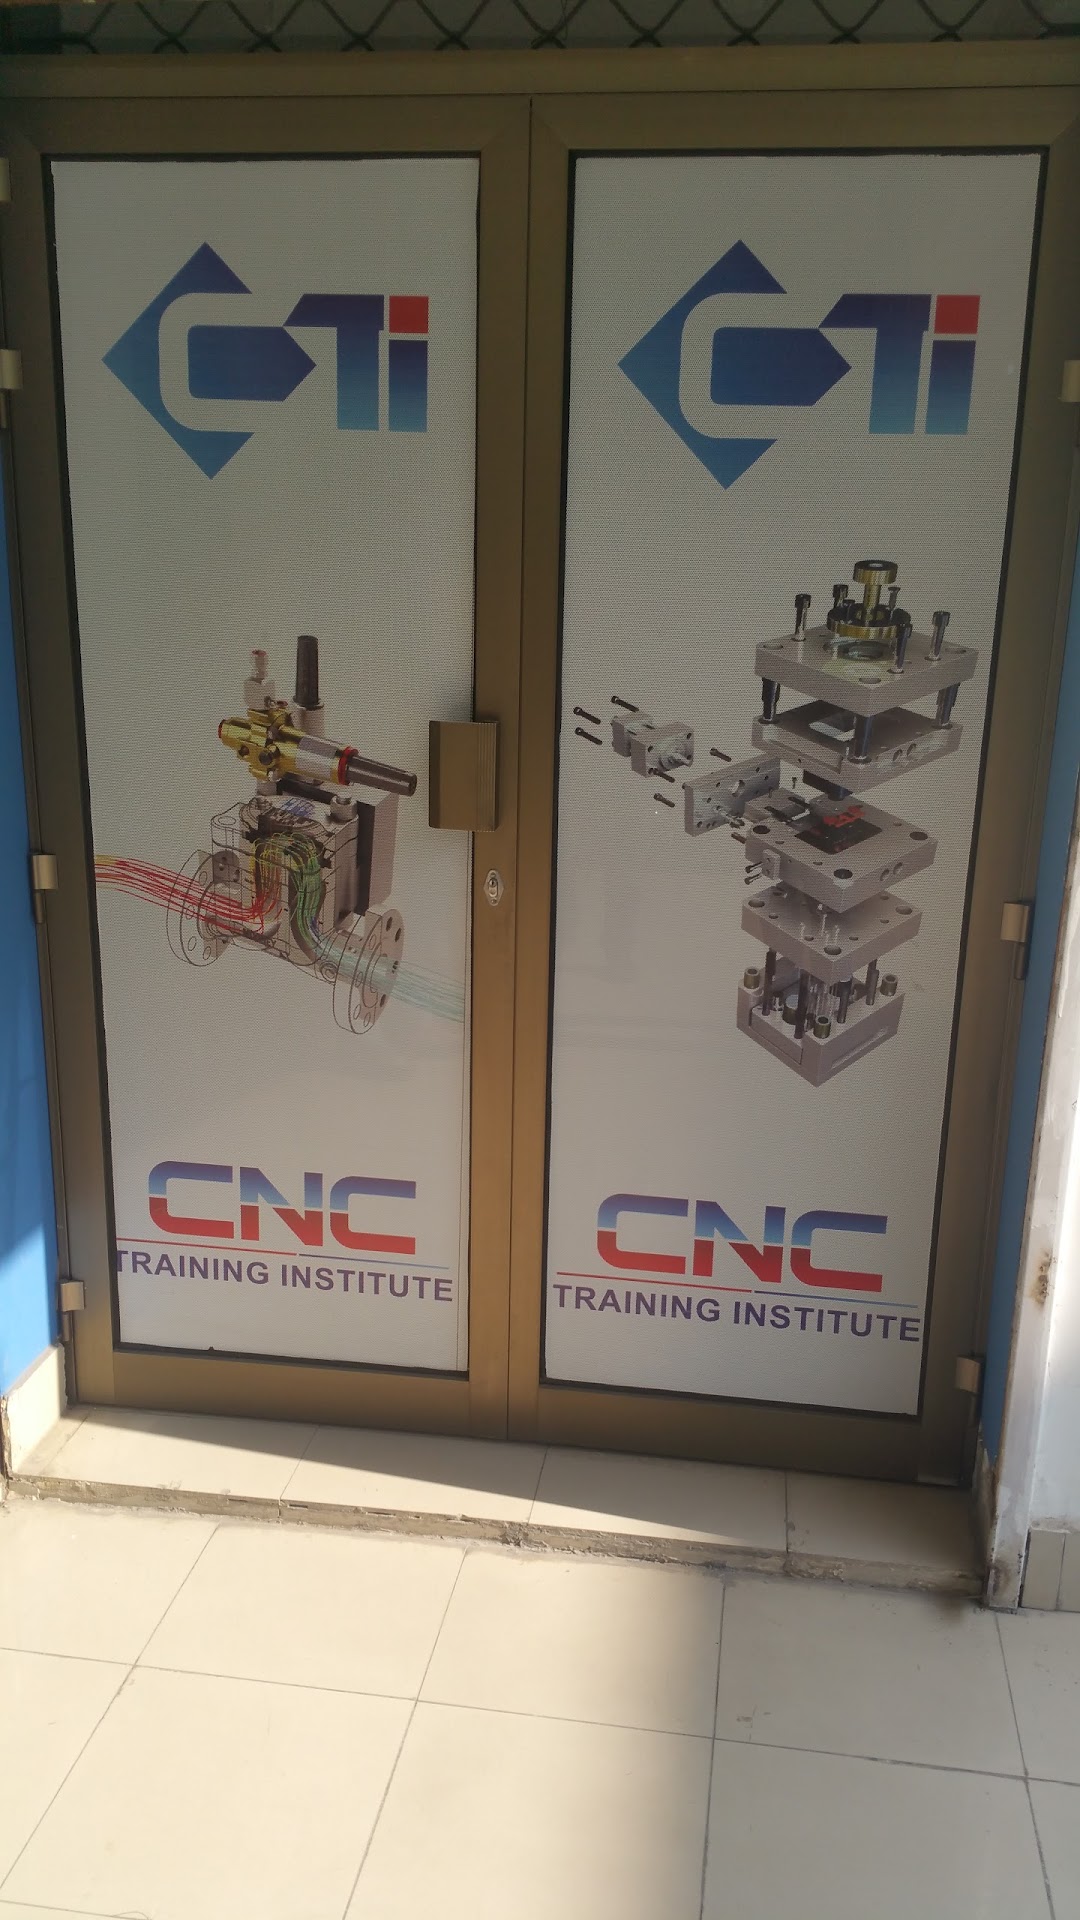 CNC Training Institute